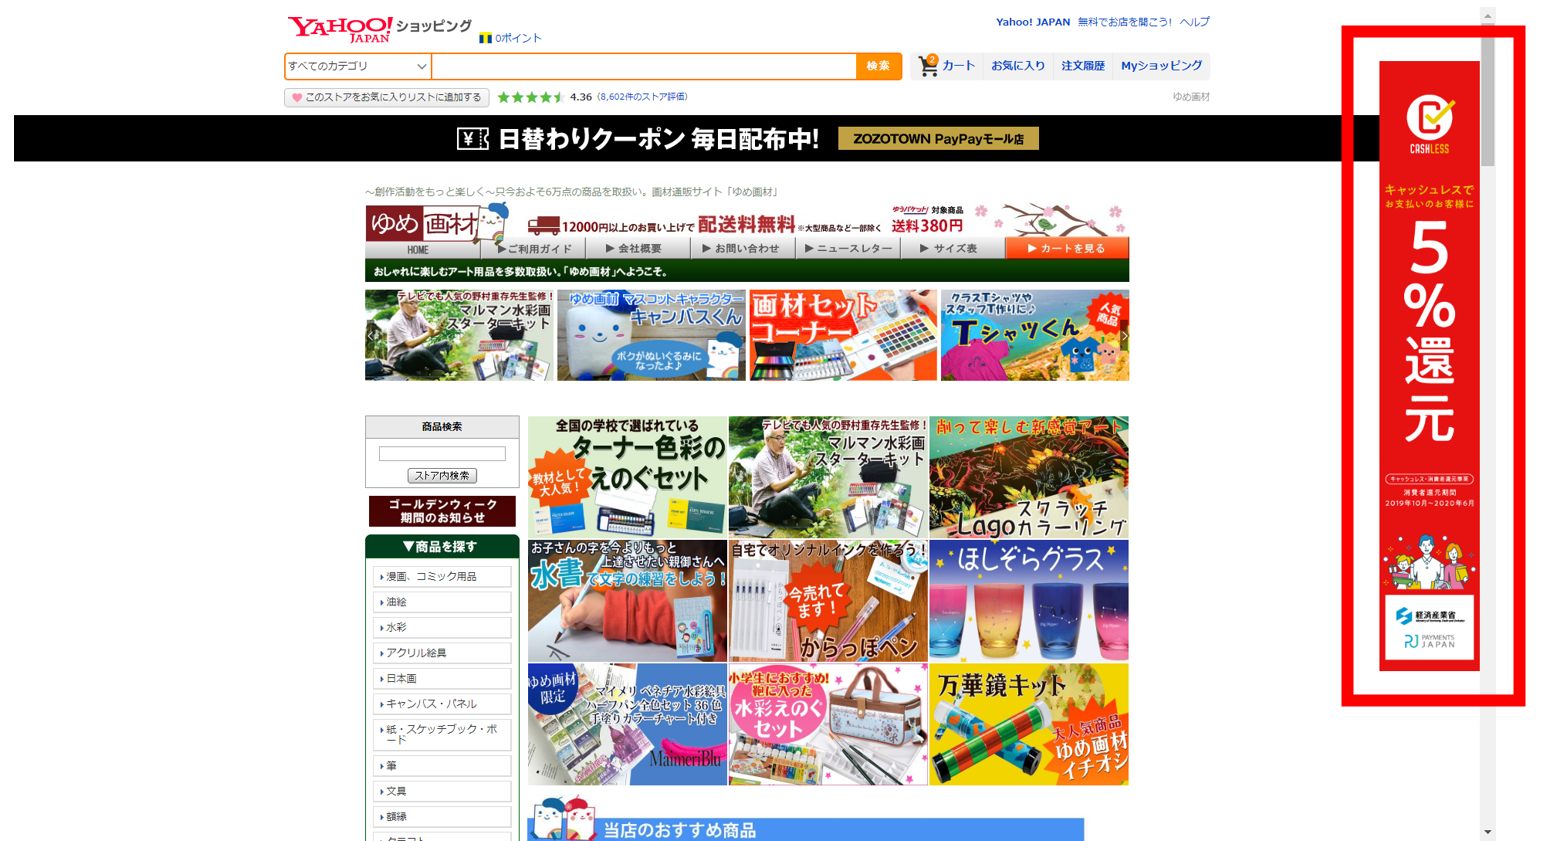 谷口松雄堂様 運営ストア「ゆめ画材」にぎわいバナーによるトップページ縦型大型バナー